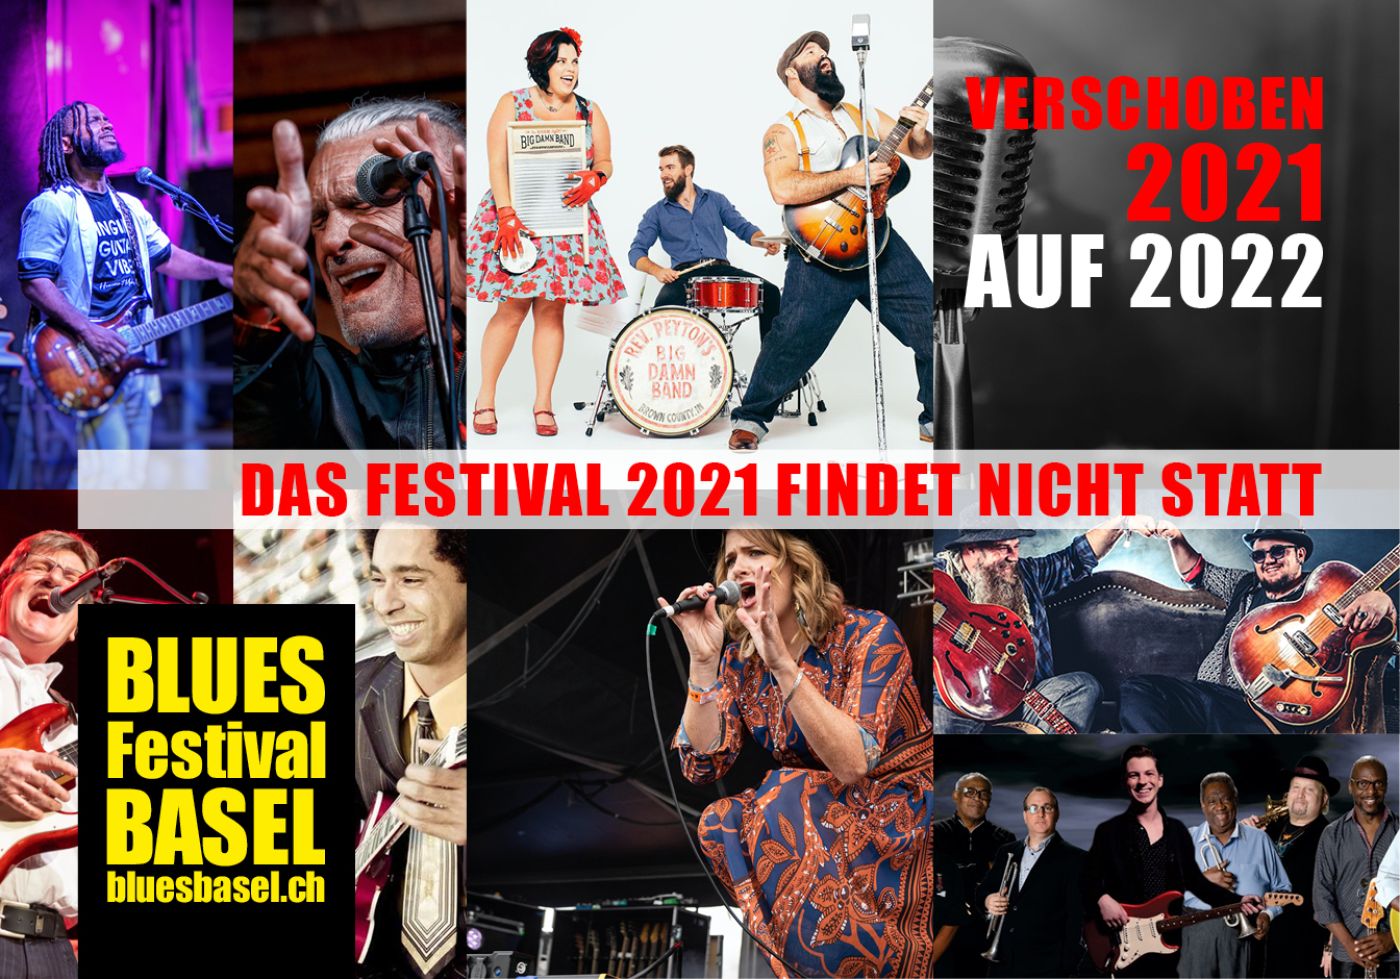 Bluesfestival Basel auf Dezember 2022 verschoben!